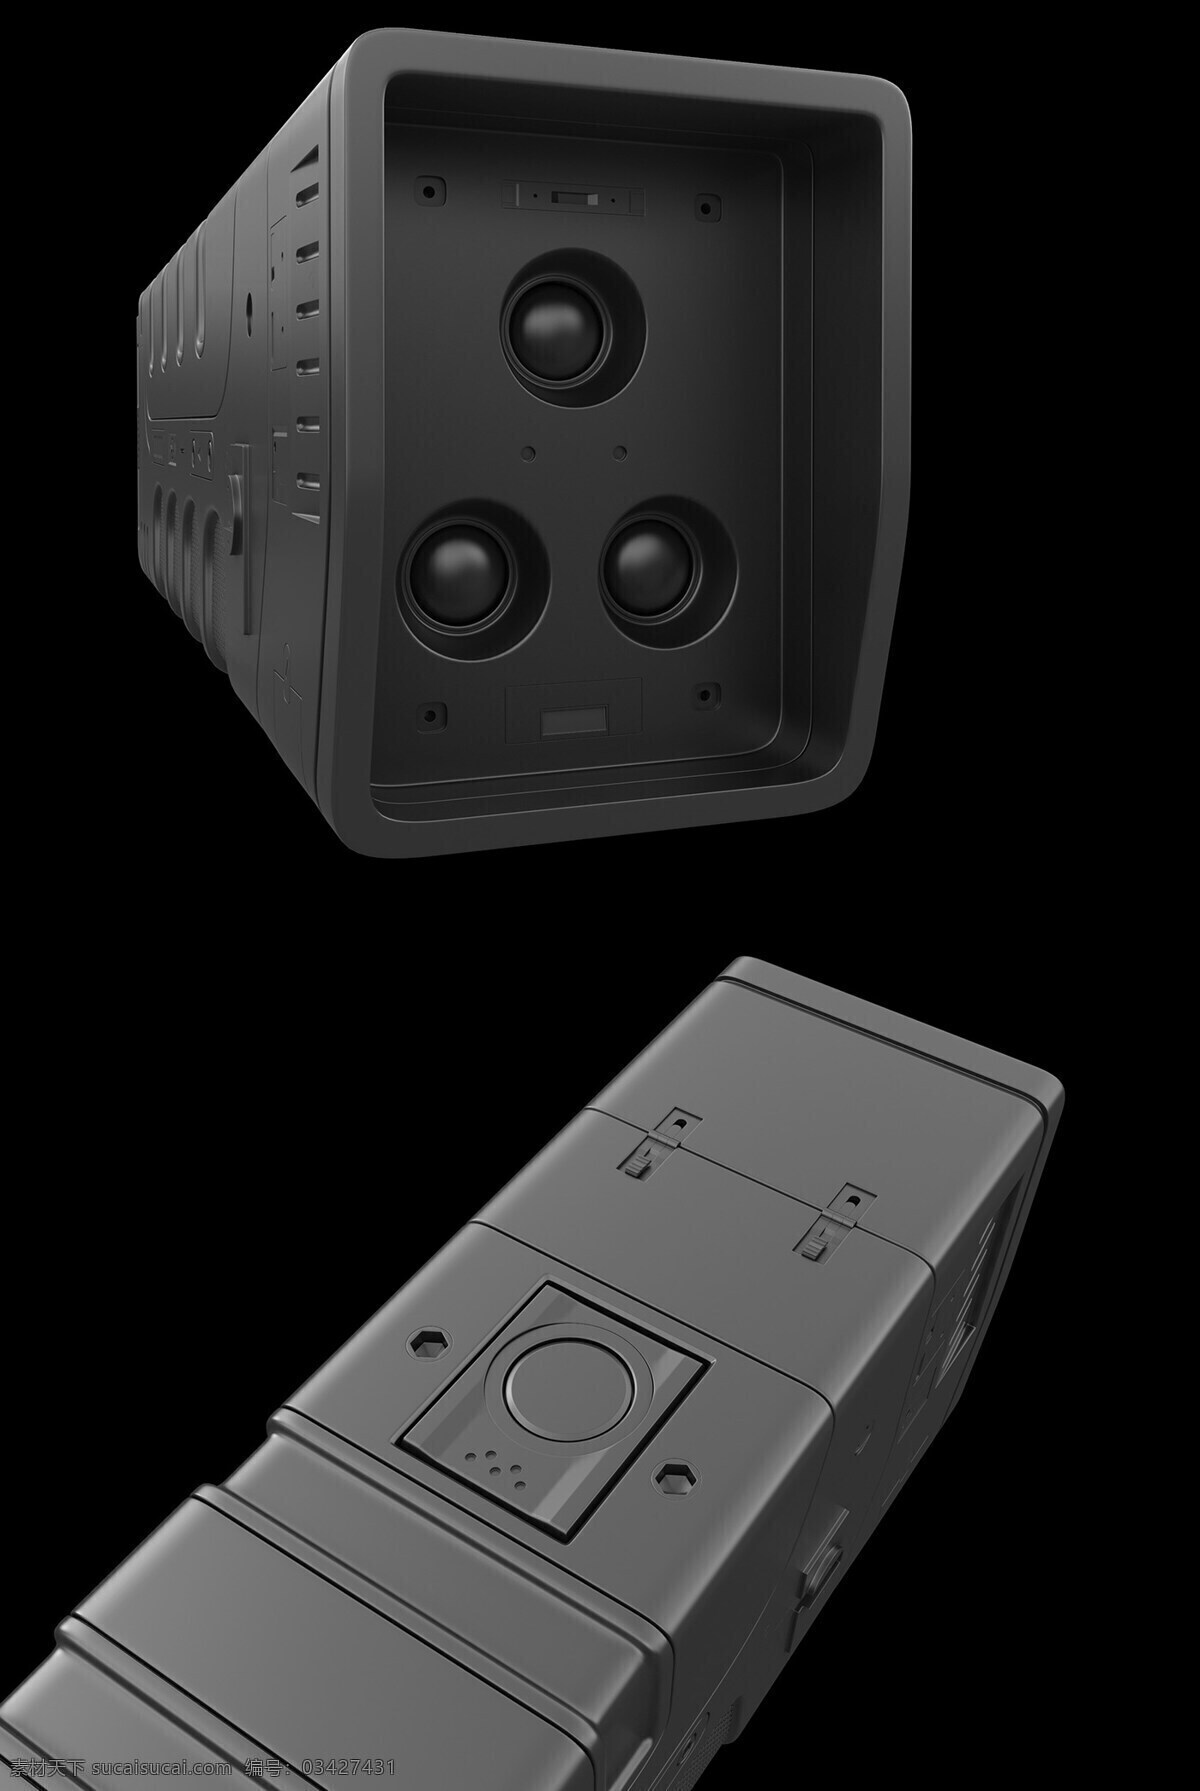 3d建模 产品 灯 概念设计 光照 黑色 模型 高科技 科幻 手电筒